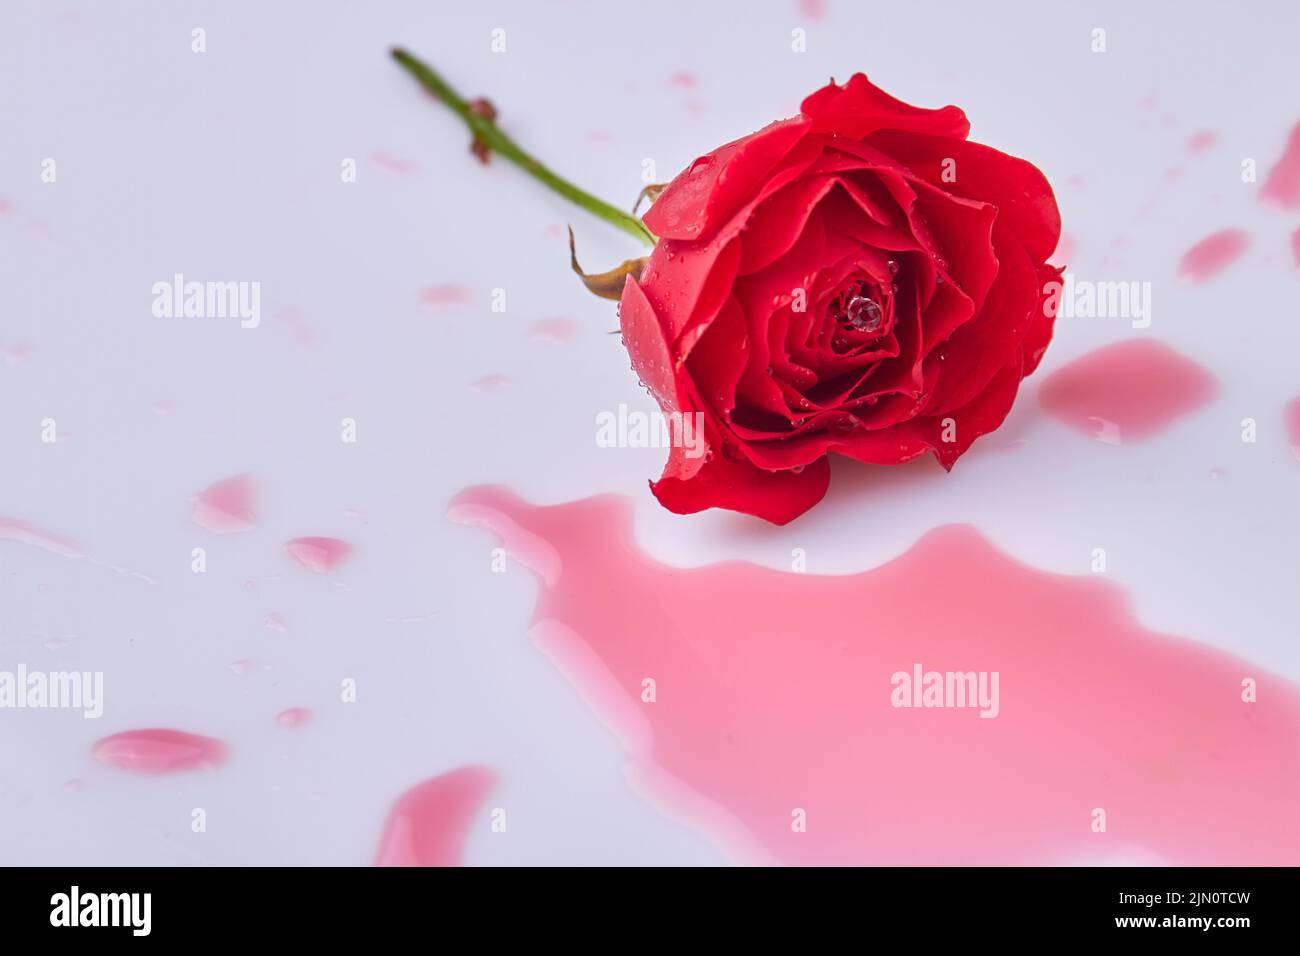 Rojo flor de rosa húmeda y líquido sobre superficie blanca. Charco rojo de flor de rosa. Foto de stock